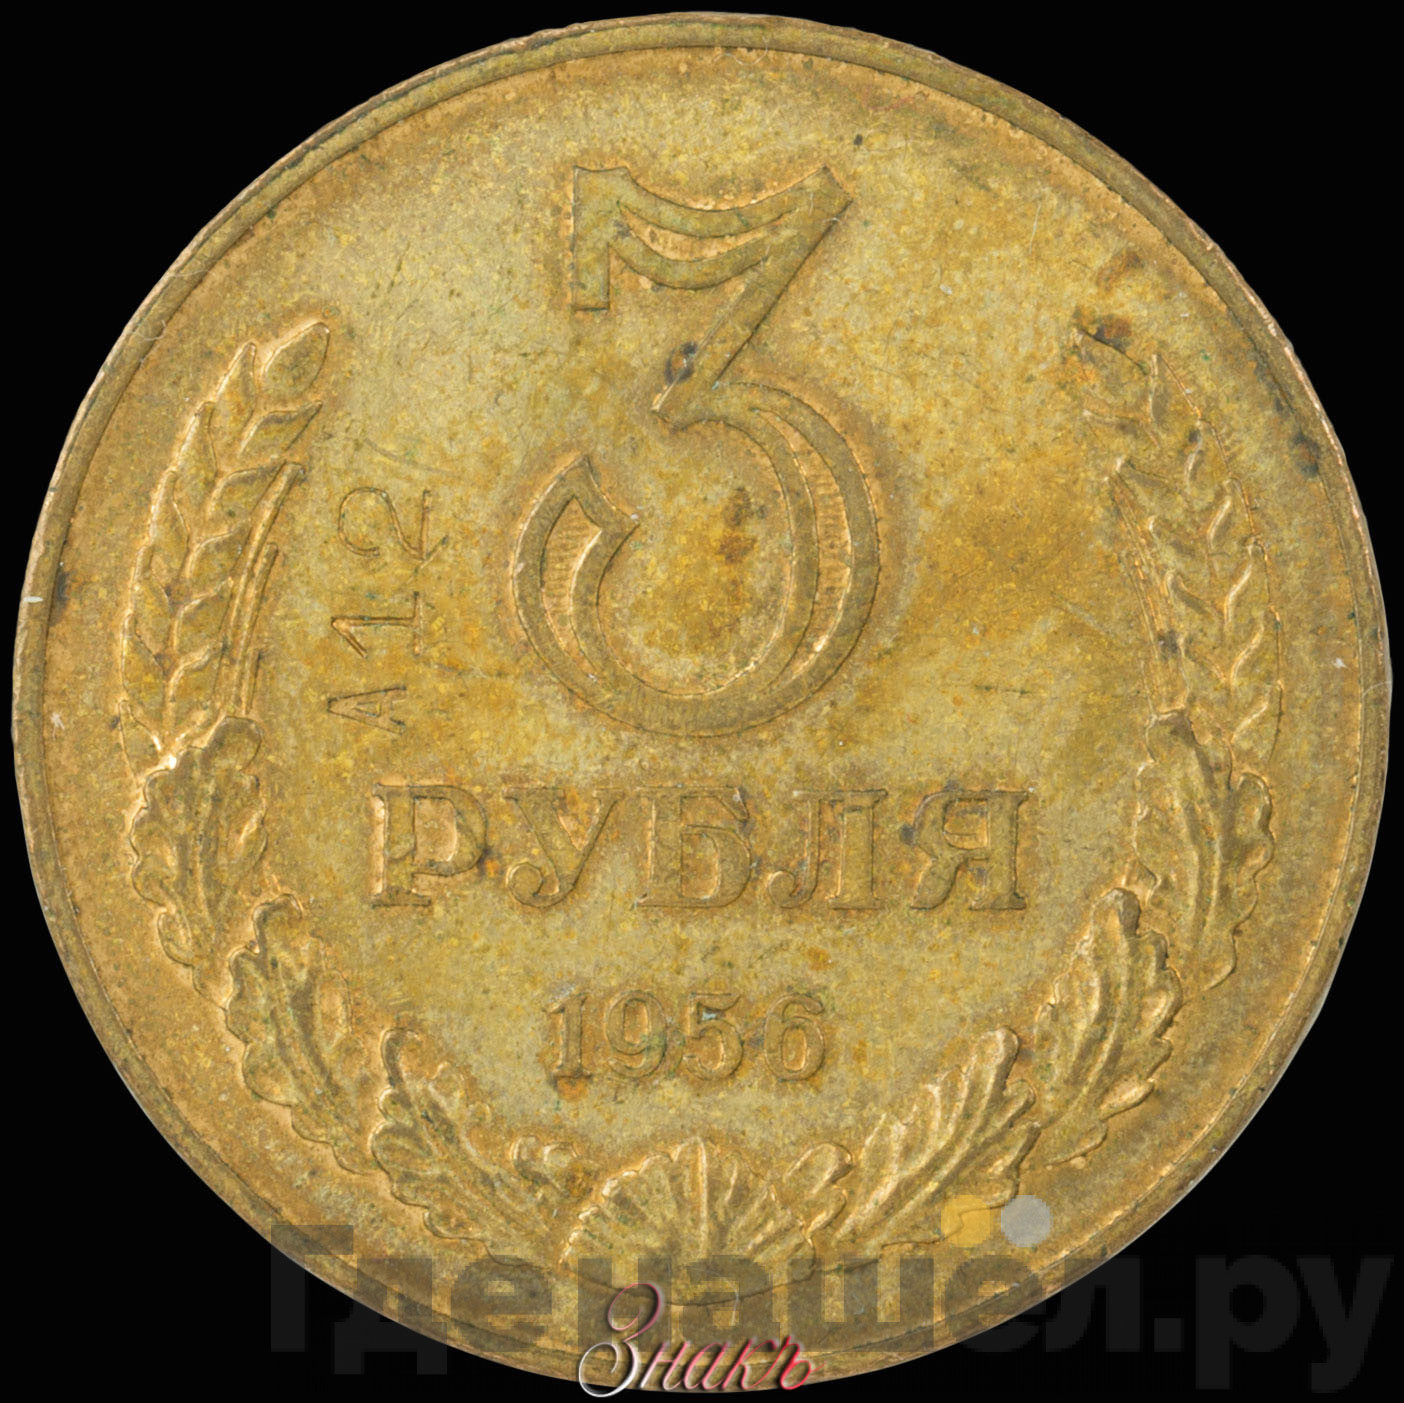 3 рубля 1956 года